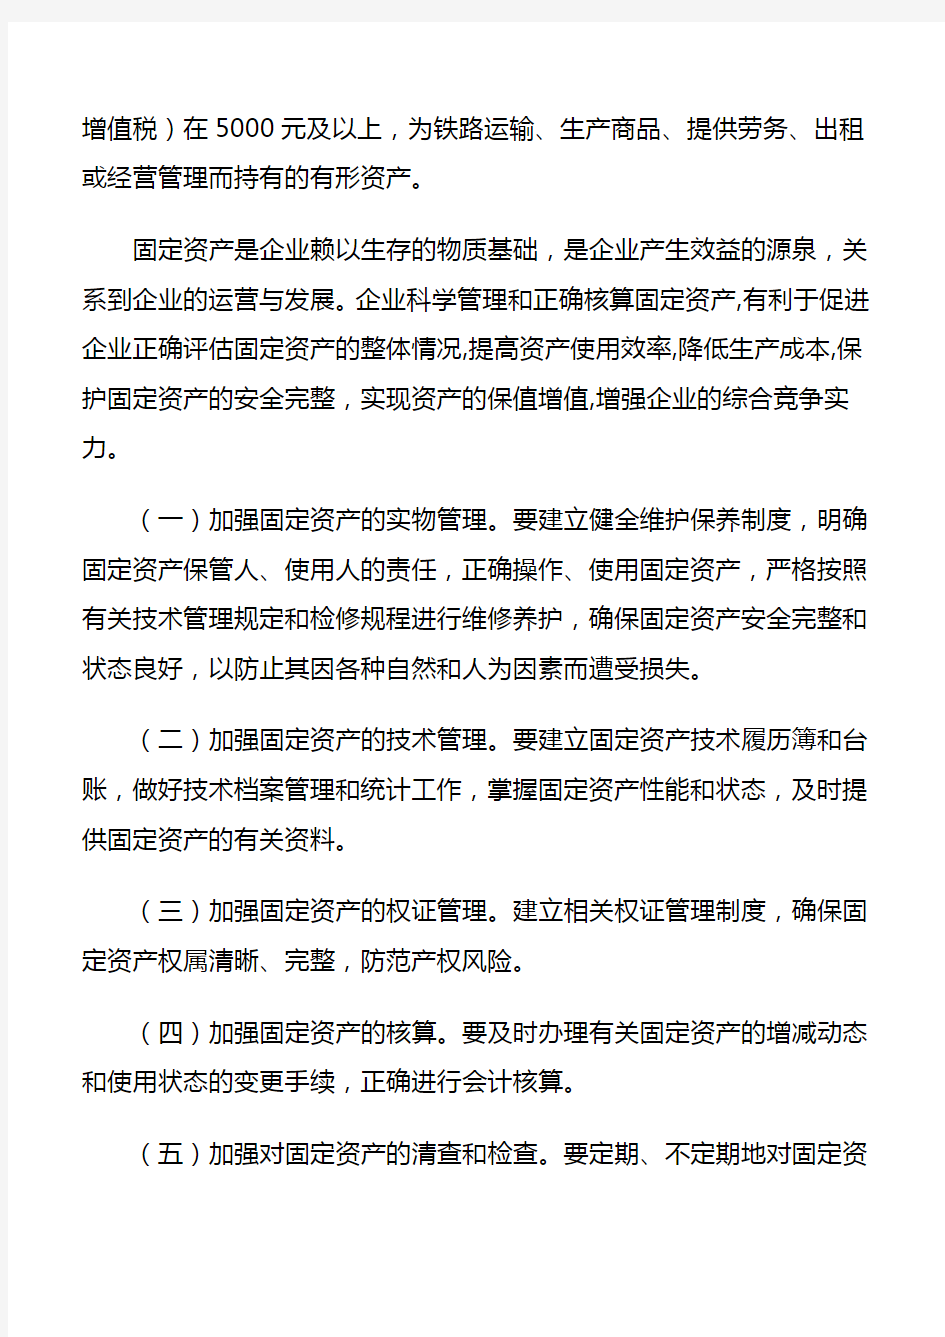 中国铁路总公司固定资产管理办法